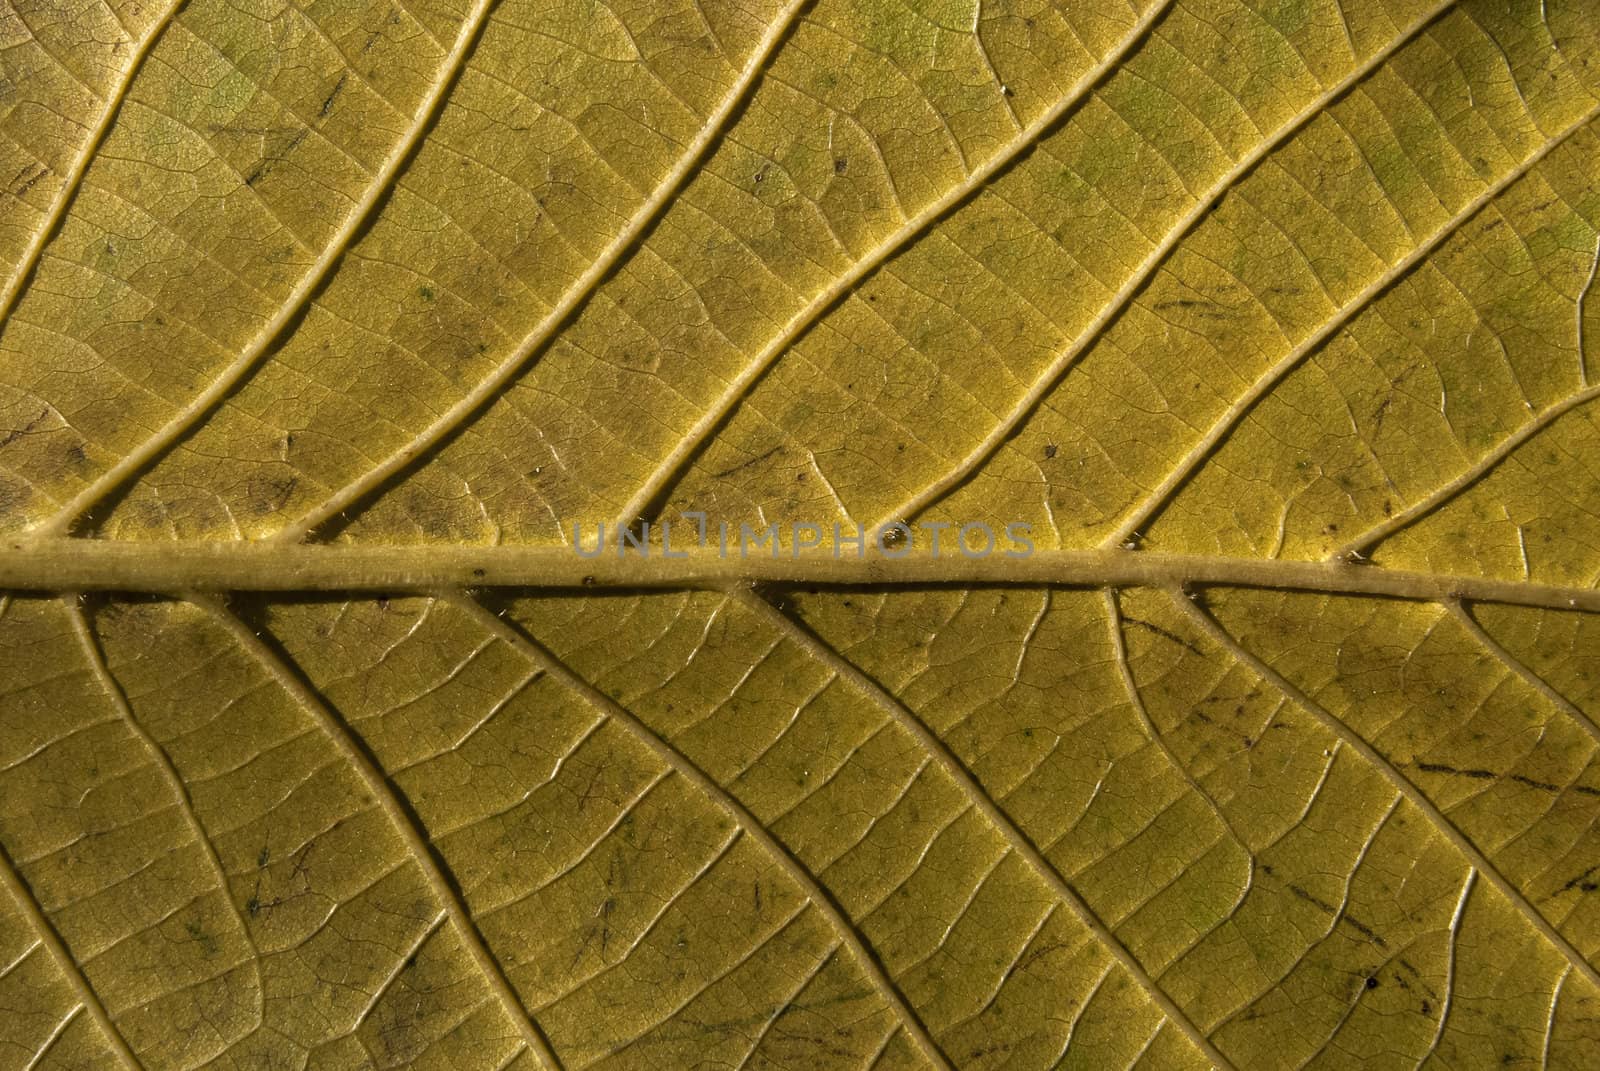 Leaf structure underside by varbenov